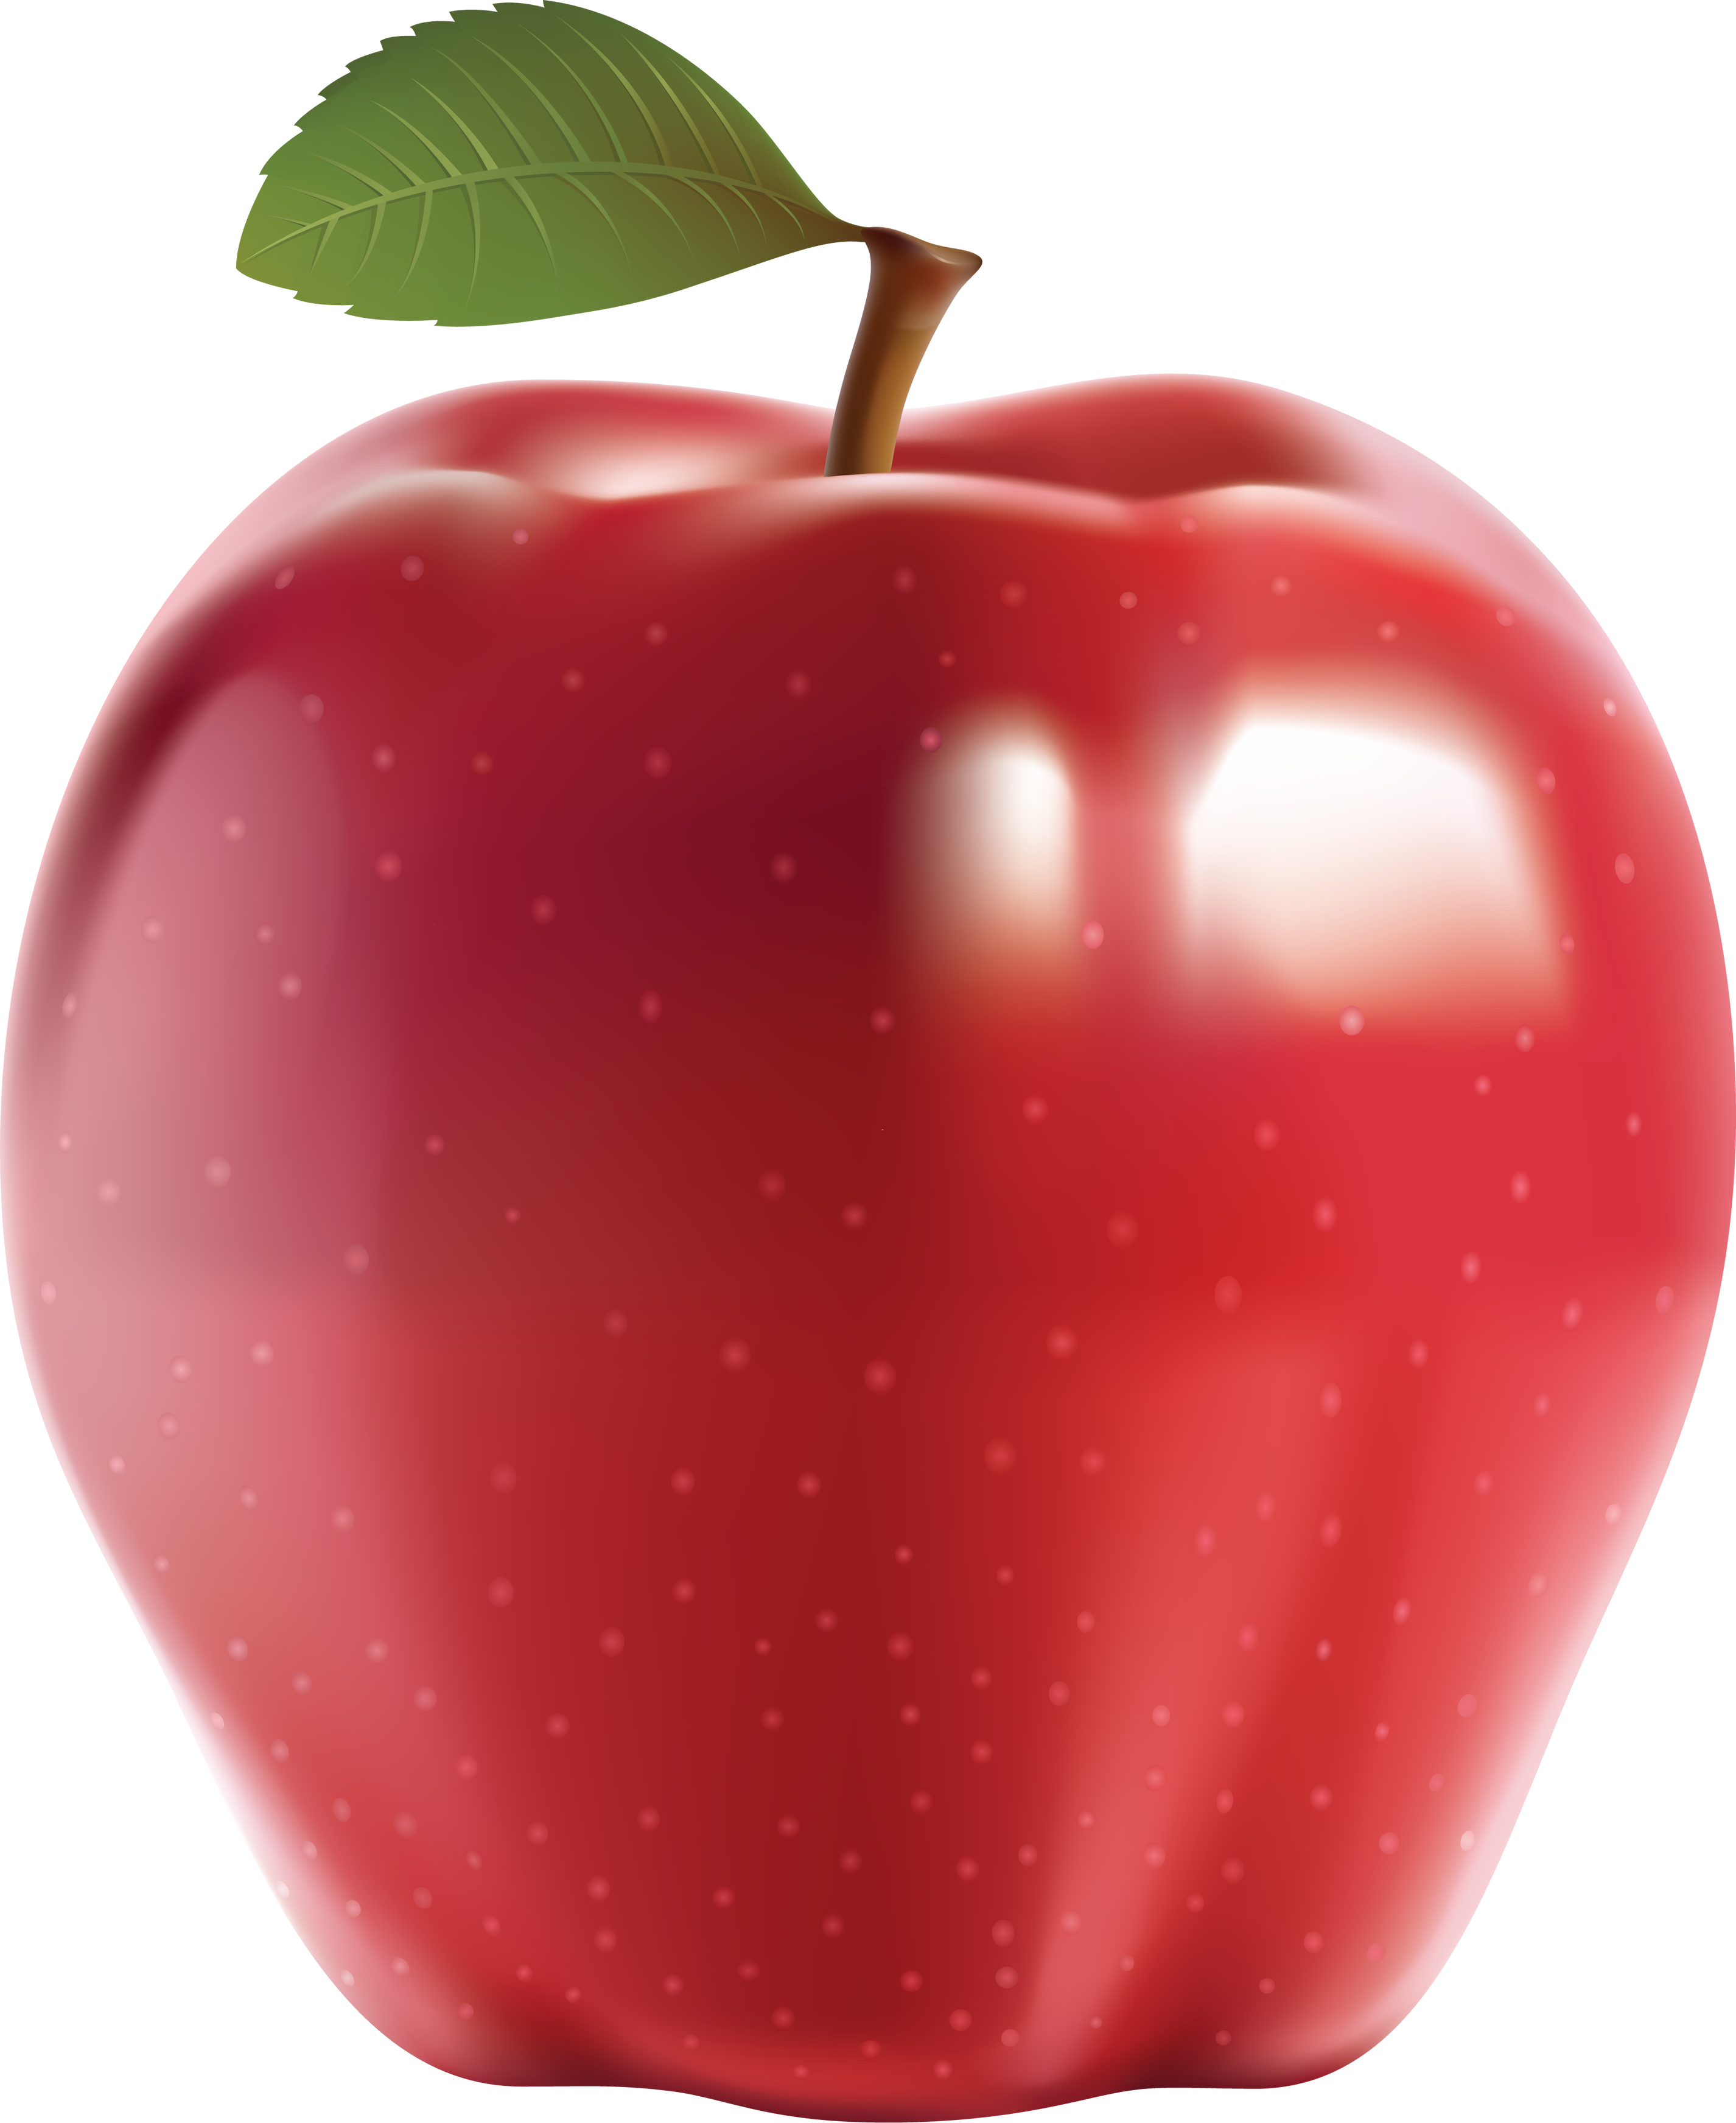 빨간 사과 과일 PNG 이미지 배경입니다